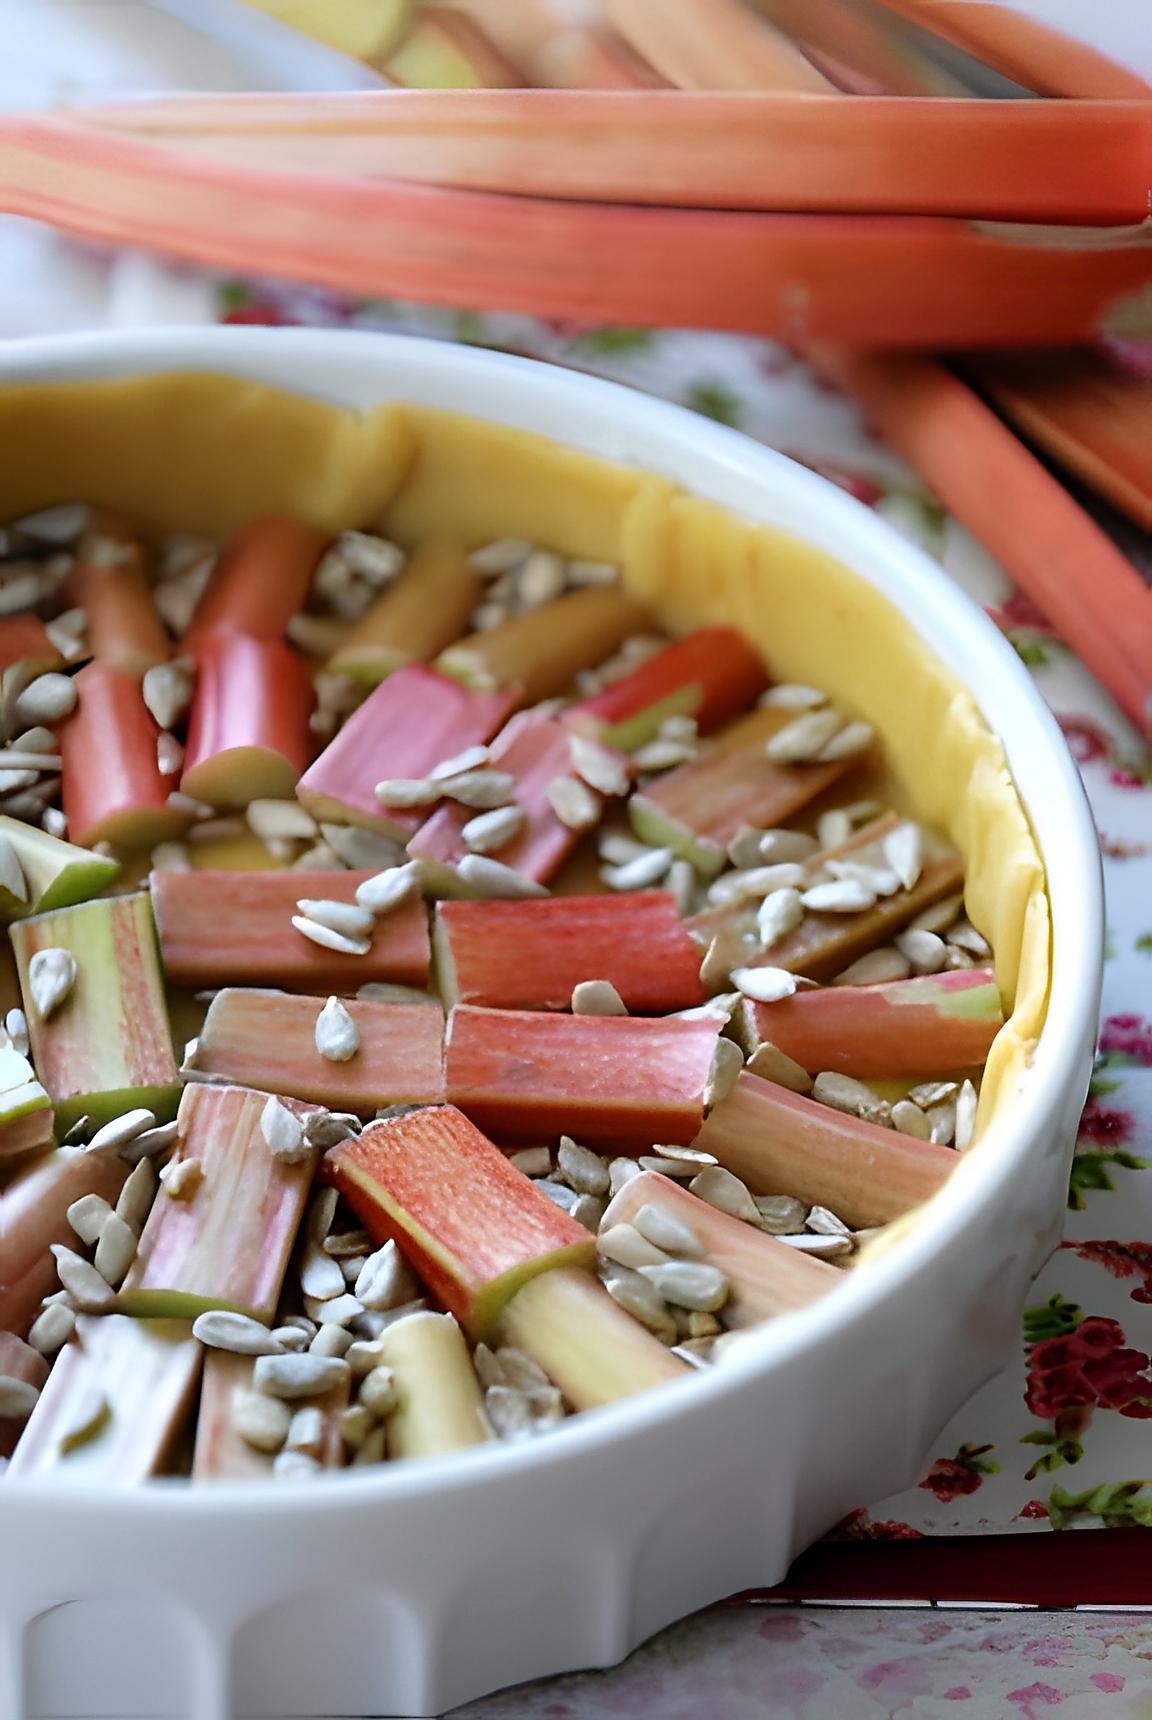 recette Tarte à la rhubarbe et aux graines de tournesol